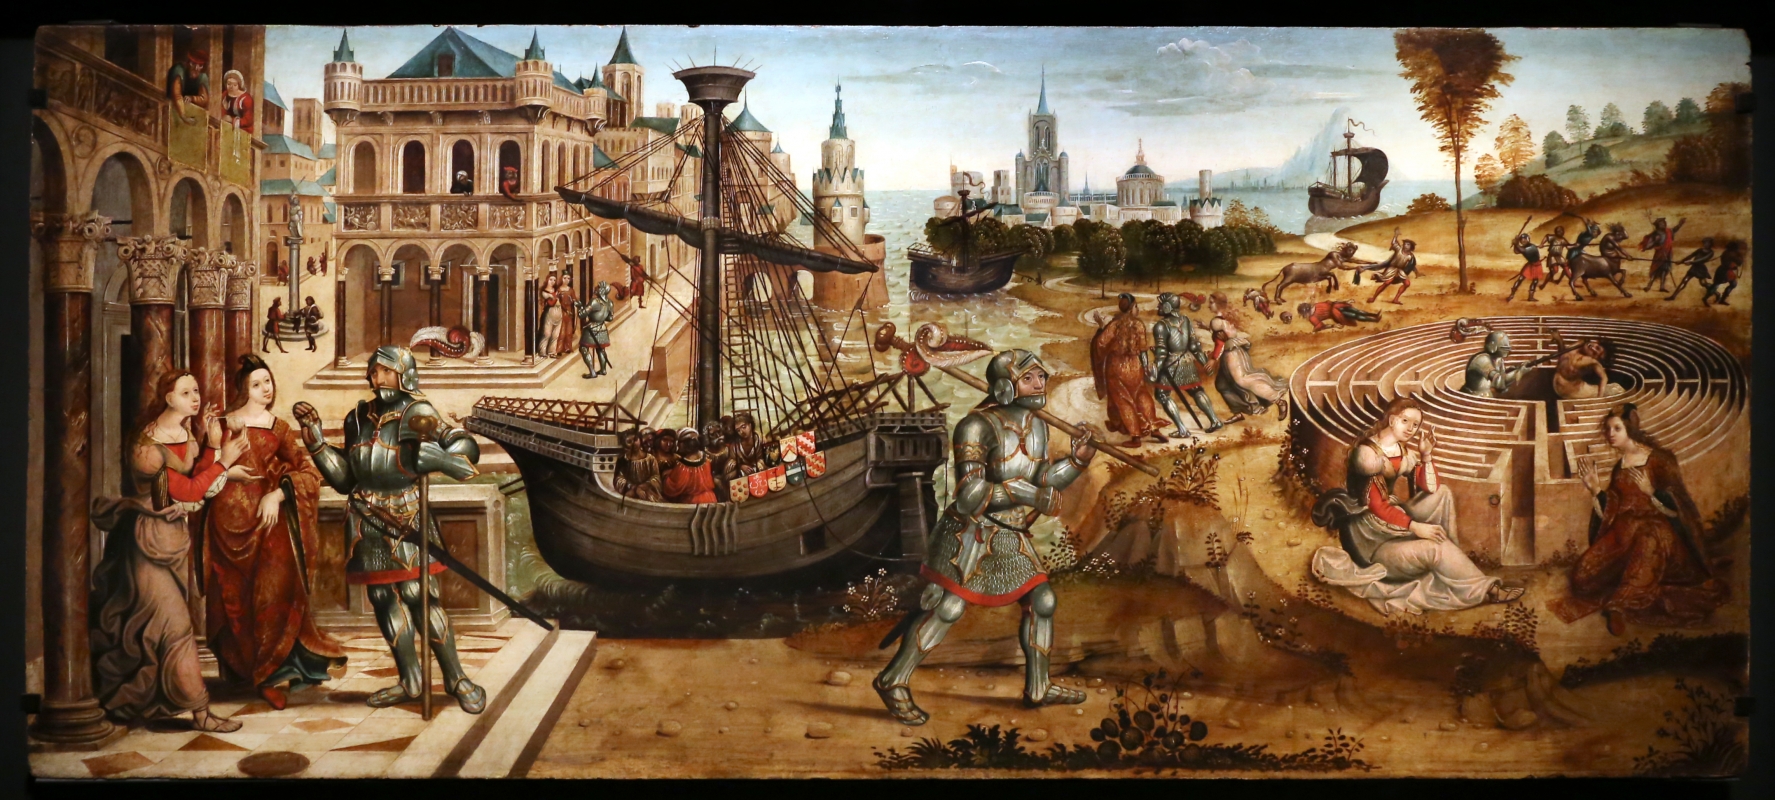 Maestro dei cassoni campana, teseo e il minotauro, 1510-15 ca. (avignone, petit palais) 01 - Sailko